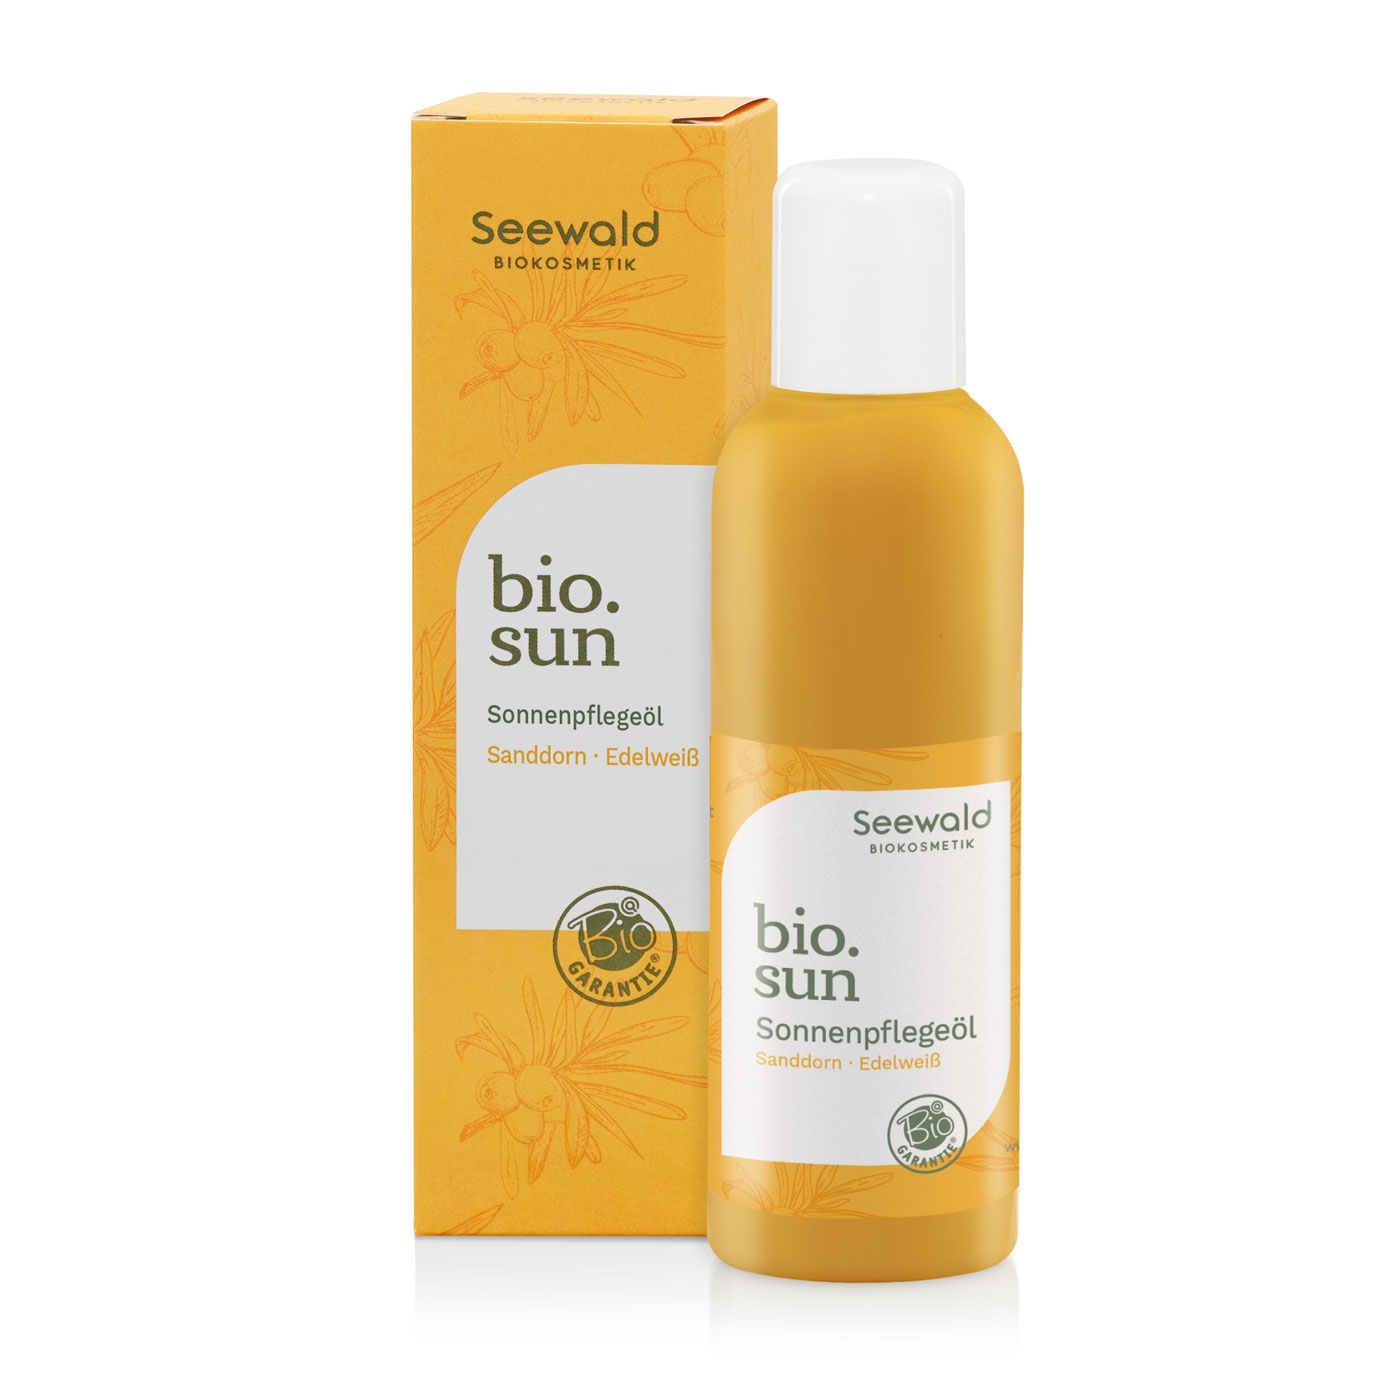 bio.sun Sonnenpflegeöl